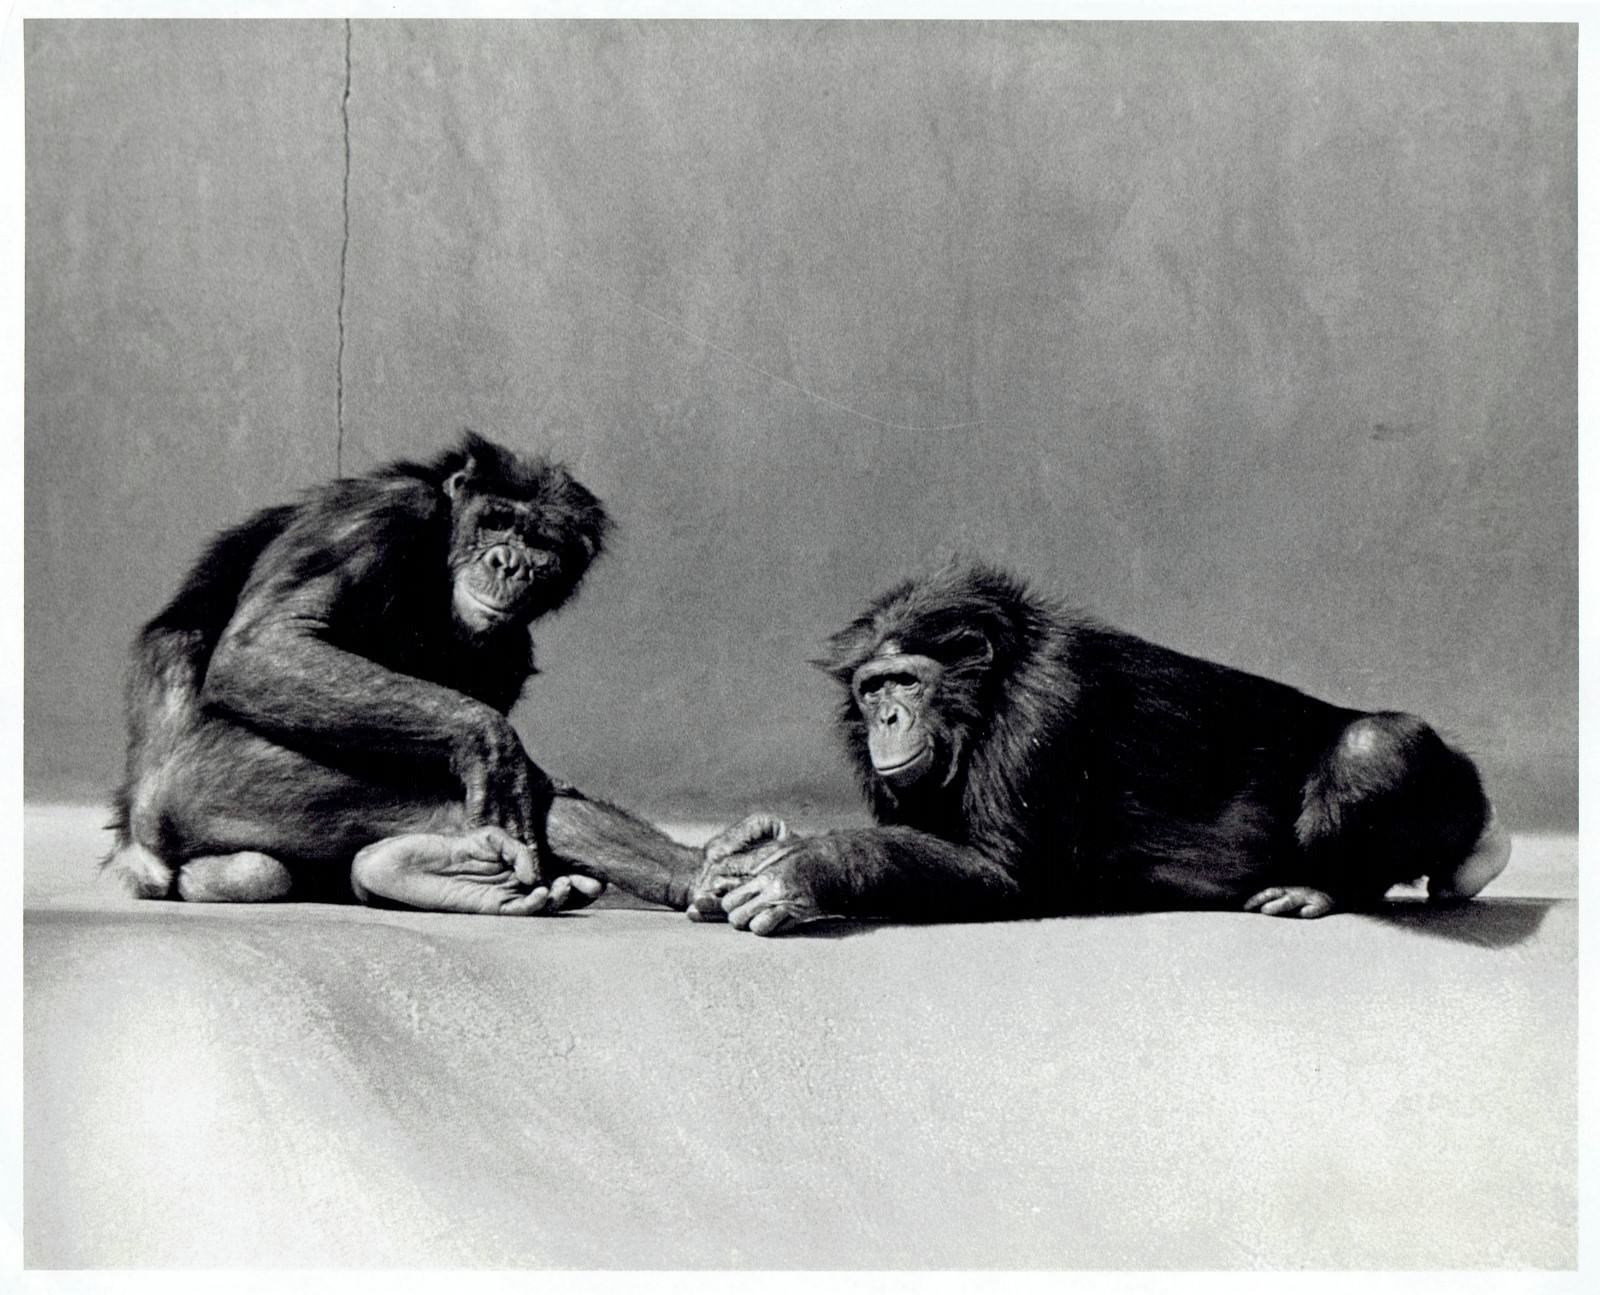 1981 Original Photo bonobo pygmy chimpanzees on exhibit at San Diego Zoo